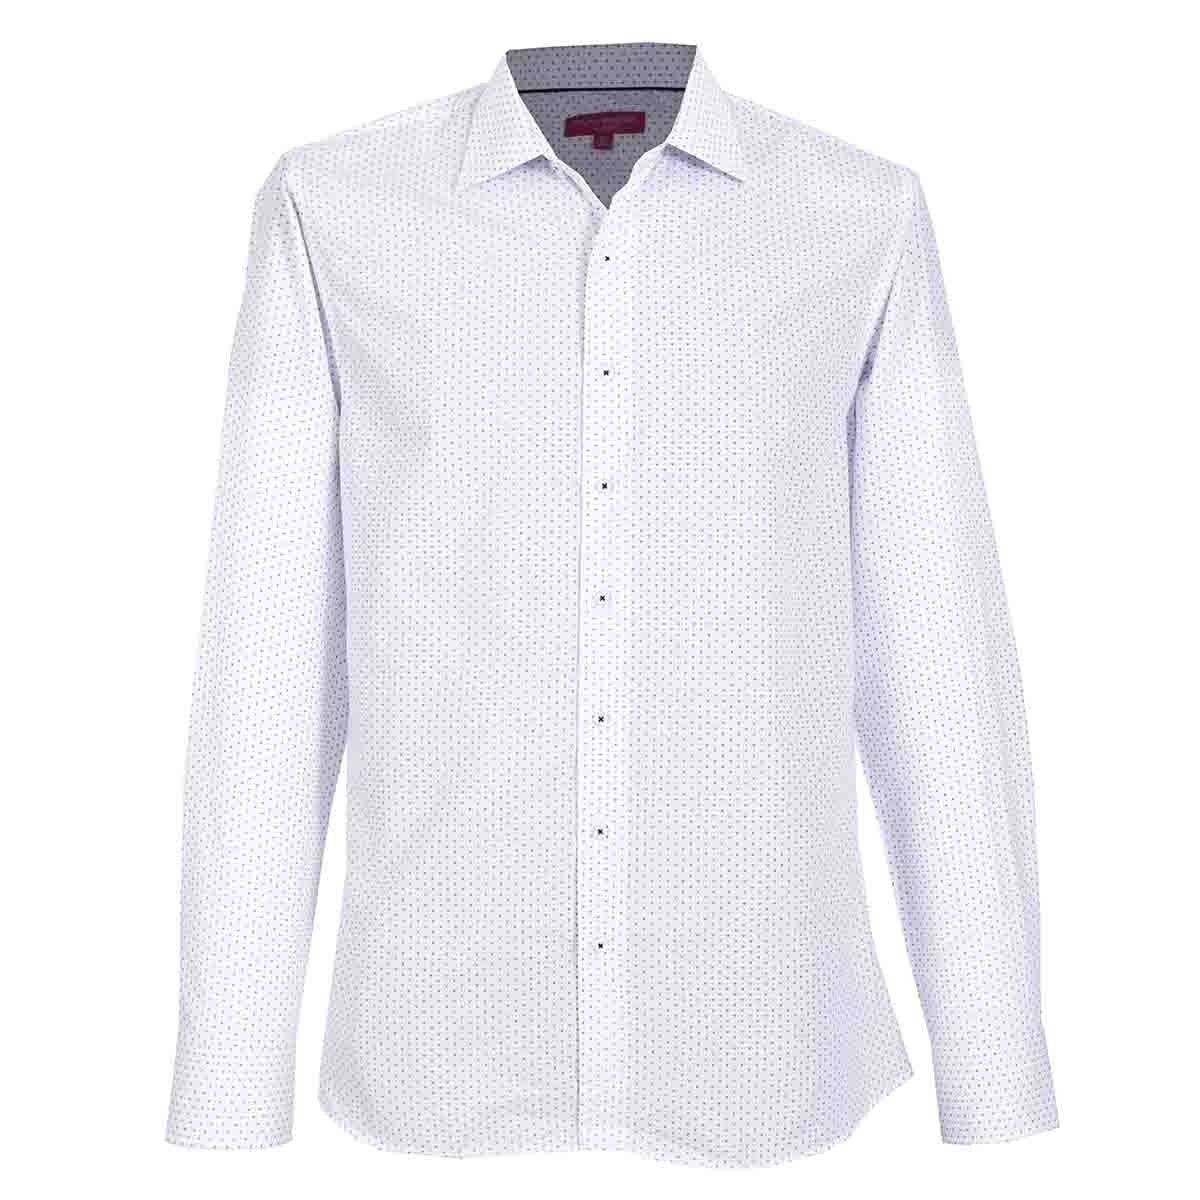 Camisa Color Blanco Combinado Bruno Magnani